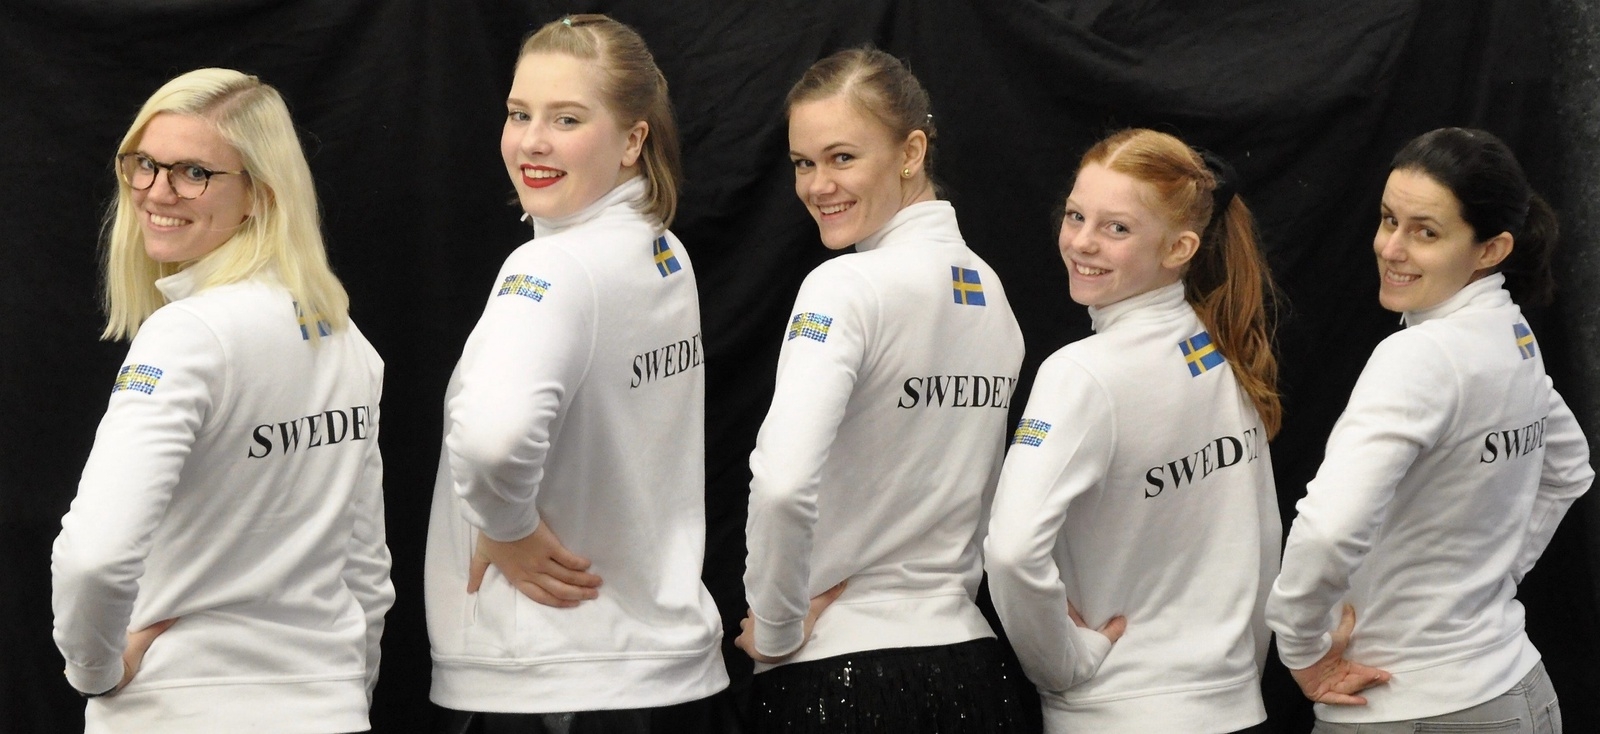 Tyringe Konståkningssällskap representerade Sverige i Reykjavik International Games. Tränarna Michaela Kristensson och Rose Kathy flankerar sina åkare Liv Hörlin Wisborg, Danielle Kristensson och Molly Bengtsson.